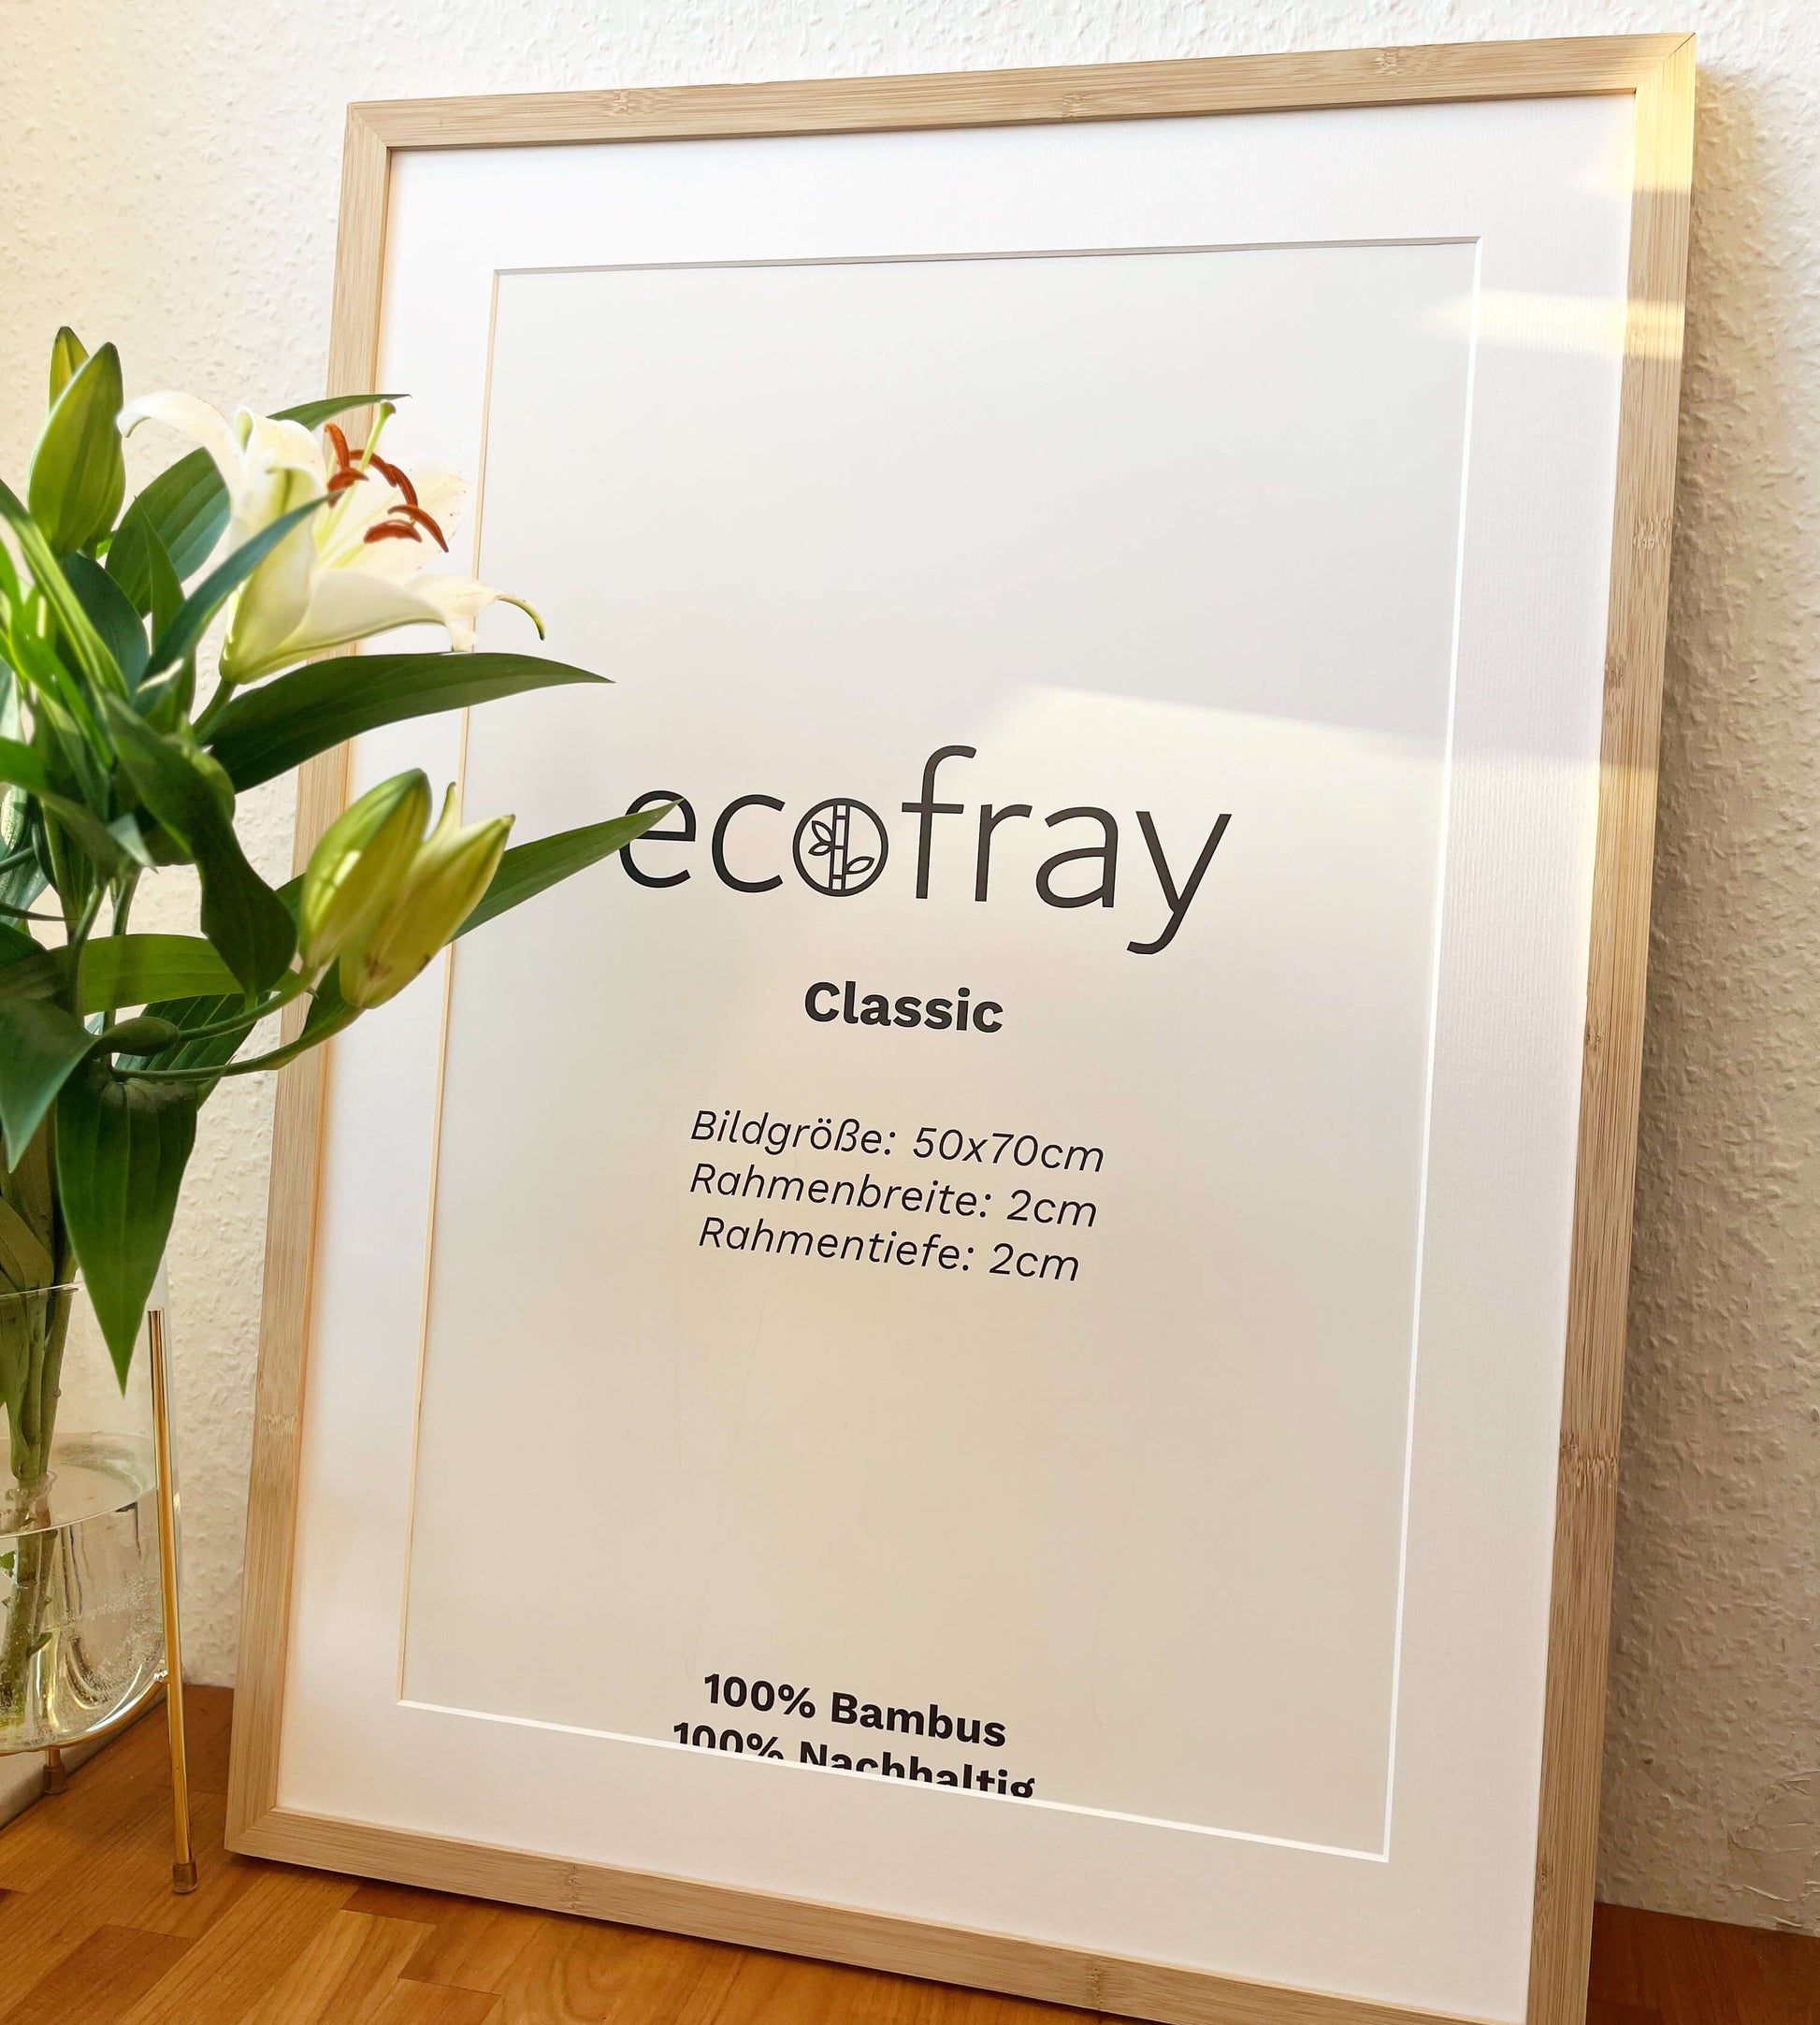 Ecofray Classic 50x70cm Bambus Bilderrahmen mit 40x60cm Passepartout in weiß